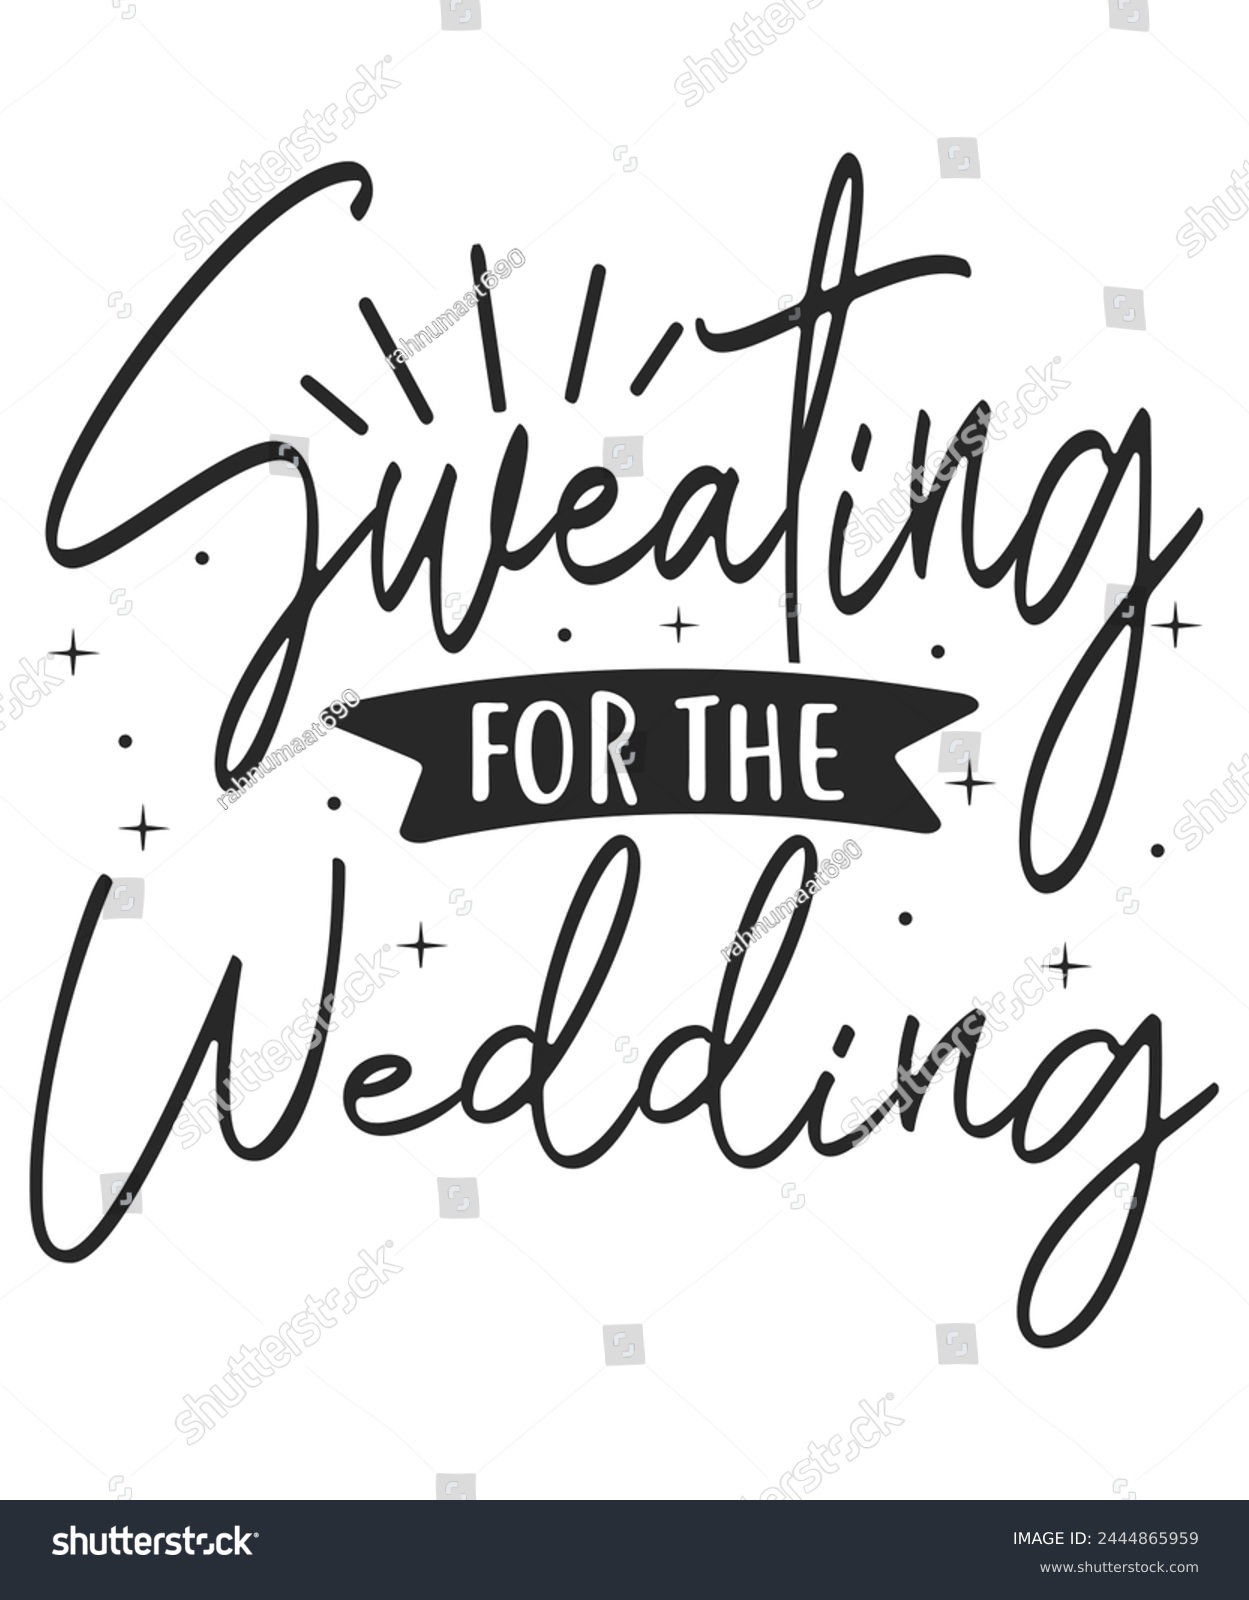 SVG of Sweating for wedding bride groom svg